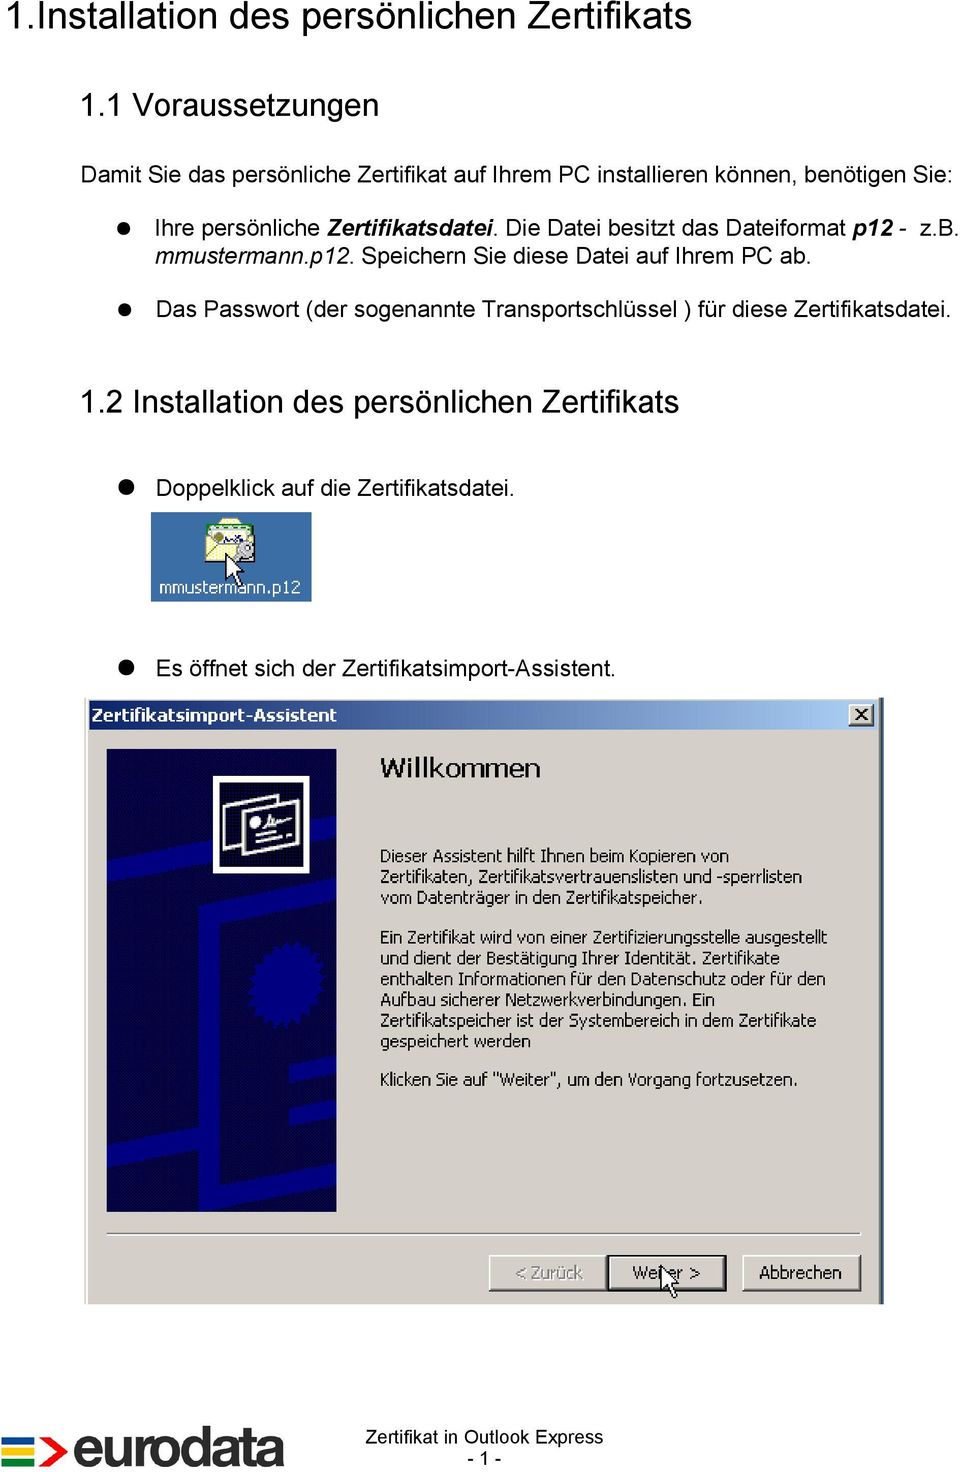 Zertifikatsdatei. Die Datei besitzt das Dateiformat p12 - z.b. mmustermann.p12. Speichern Sie diese Datei auf Ihrem PC ab.